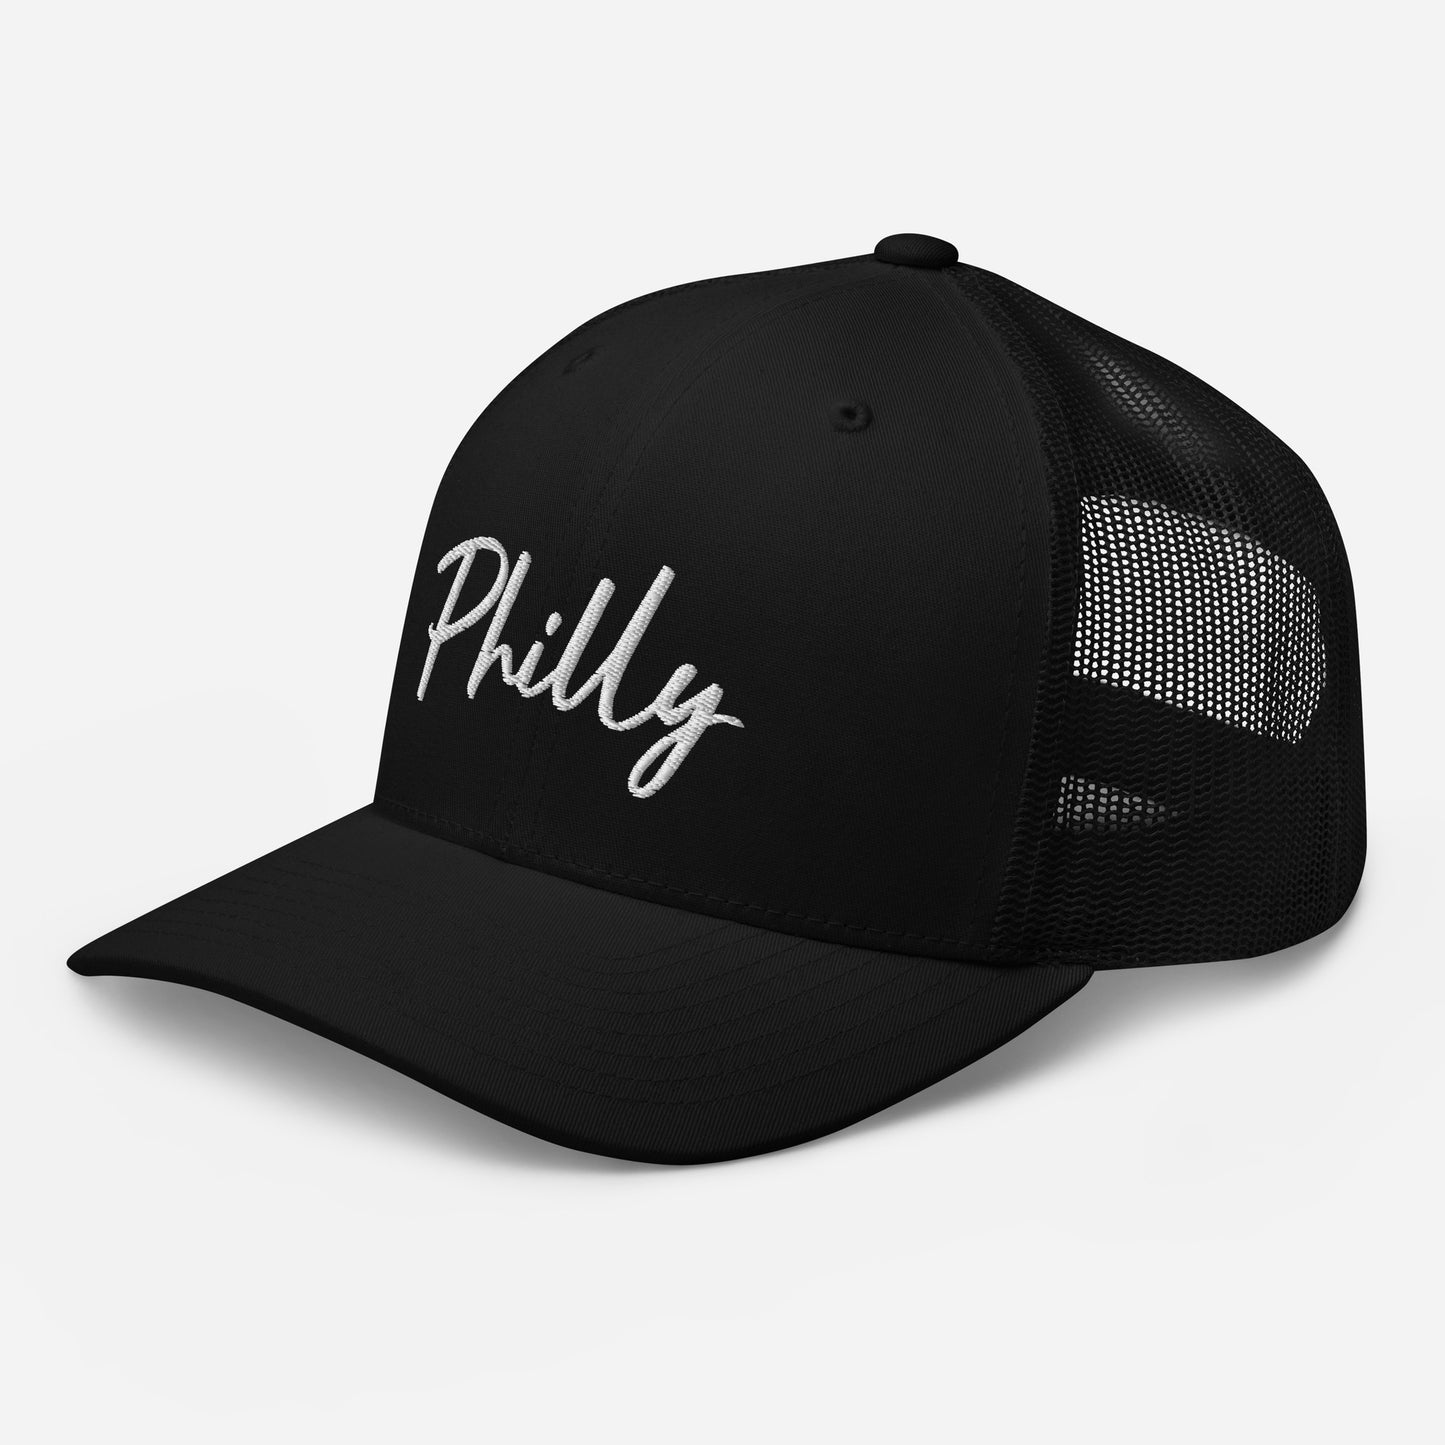 Philly Trucker Cap